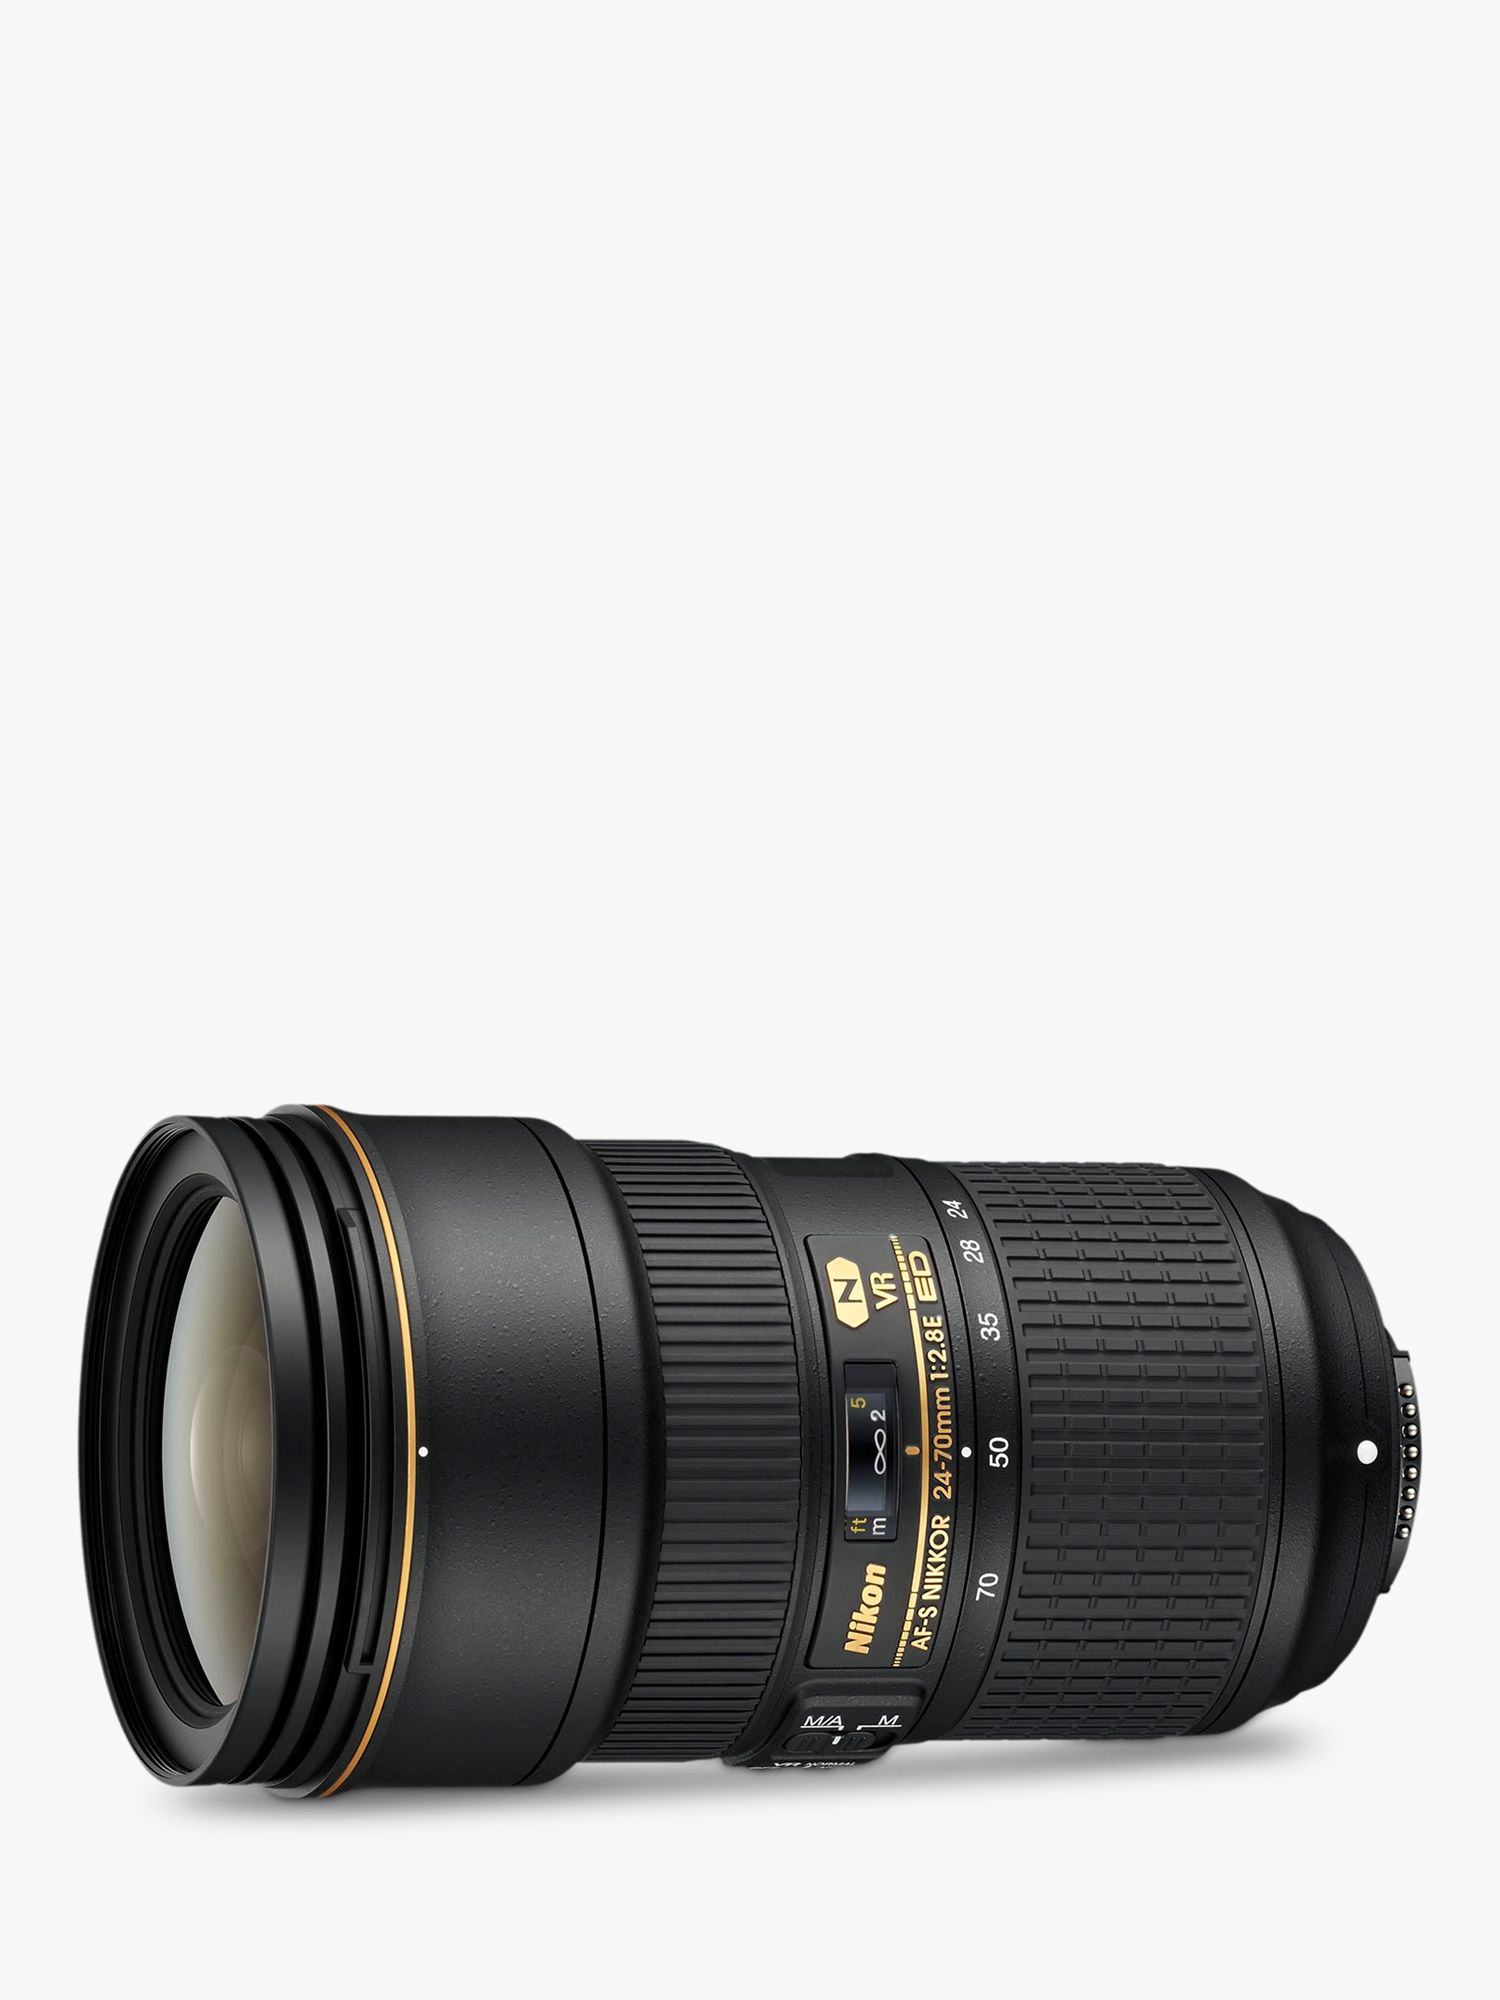 Image of Nikon AFS DXFX NIKKOR 2470mm f28E ED VR Zoom Lens